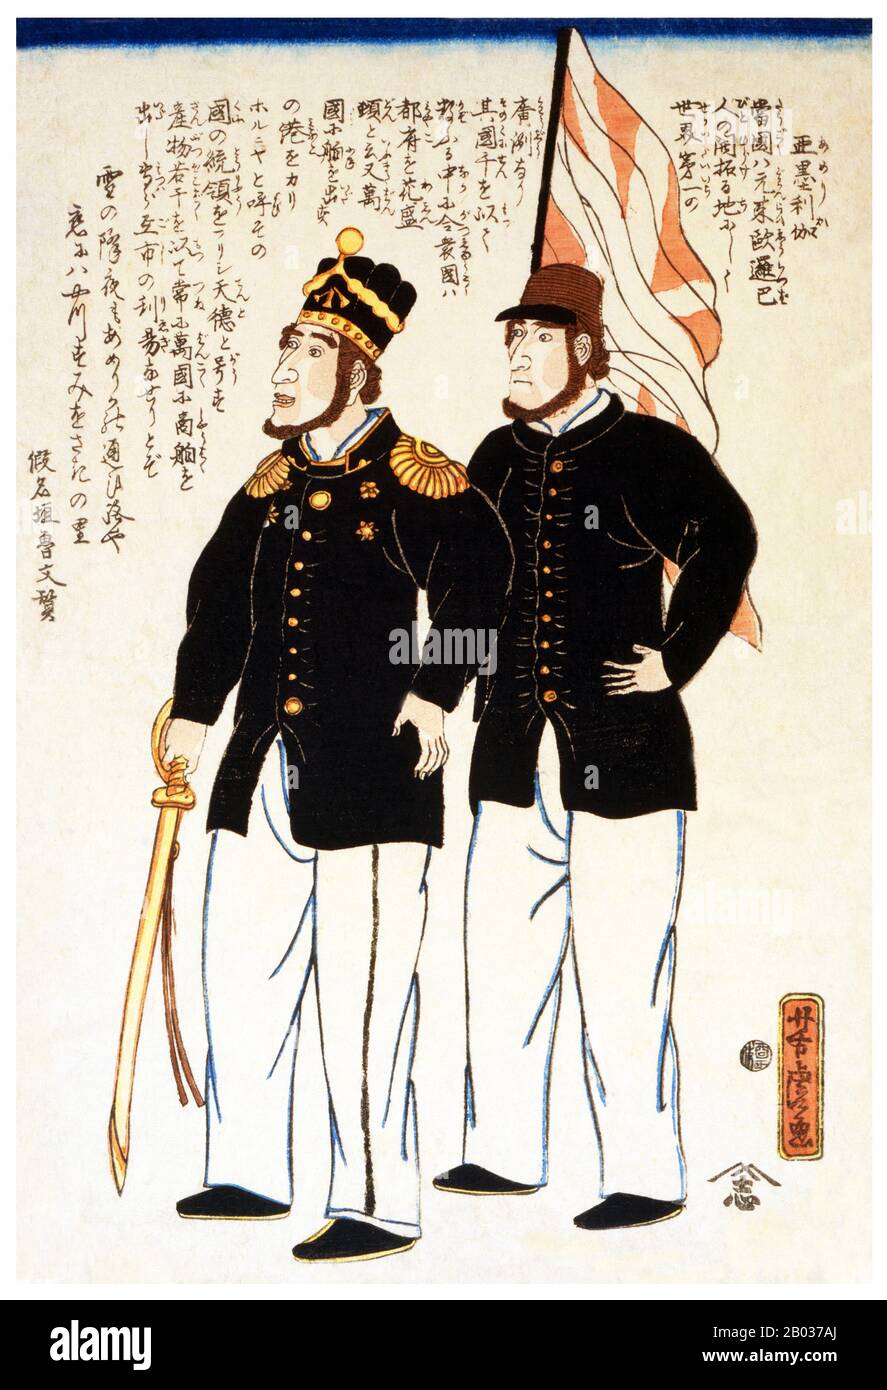 Imprimé boisés japonais montrant deux marins américains; l'imprimé inclut du texte sur l'Amérique par Kanagaki Robun. Utagawa Yoshitora était un concepteur de gravures japonaises sur bois ukiyo-e et un illustrateur de livres et de journaux qui était actif d'environ 1850 à environ 1880. Il est né à Edo (Tokyo moderne), mais ni sa date de naissance ni sa date de mort ne sont connues. Il a été le plus ancien élève d'Utagawa Kuniyoshi qui a excellé dans des reproductions de guerriers, d'acteurs kabuki, de belles femmes et d'étrangers (Yokohama-e). Banque D'Images